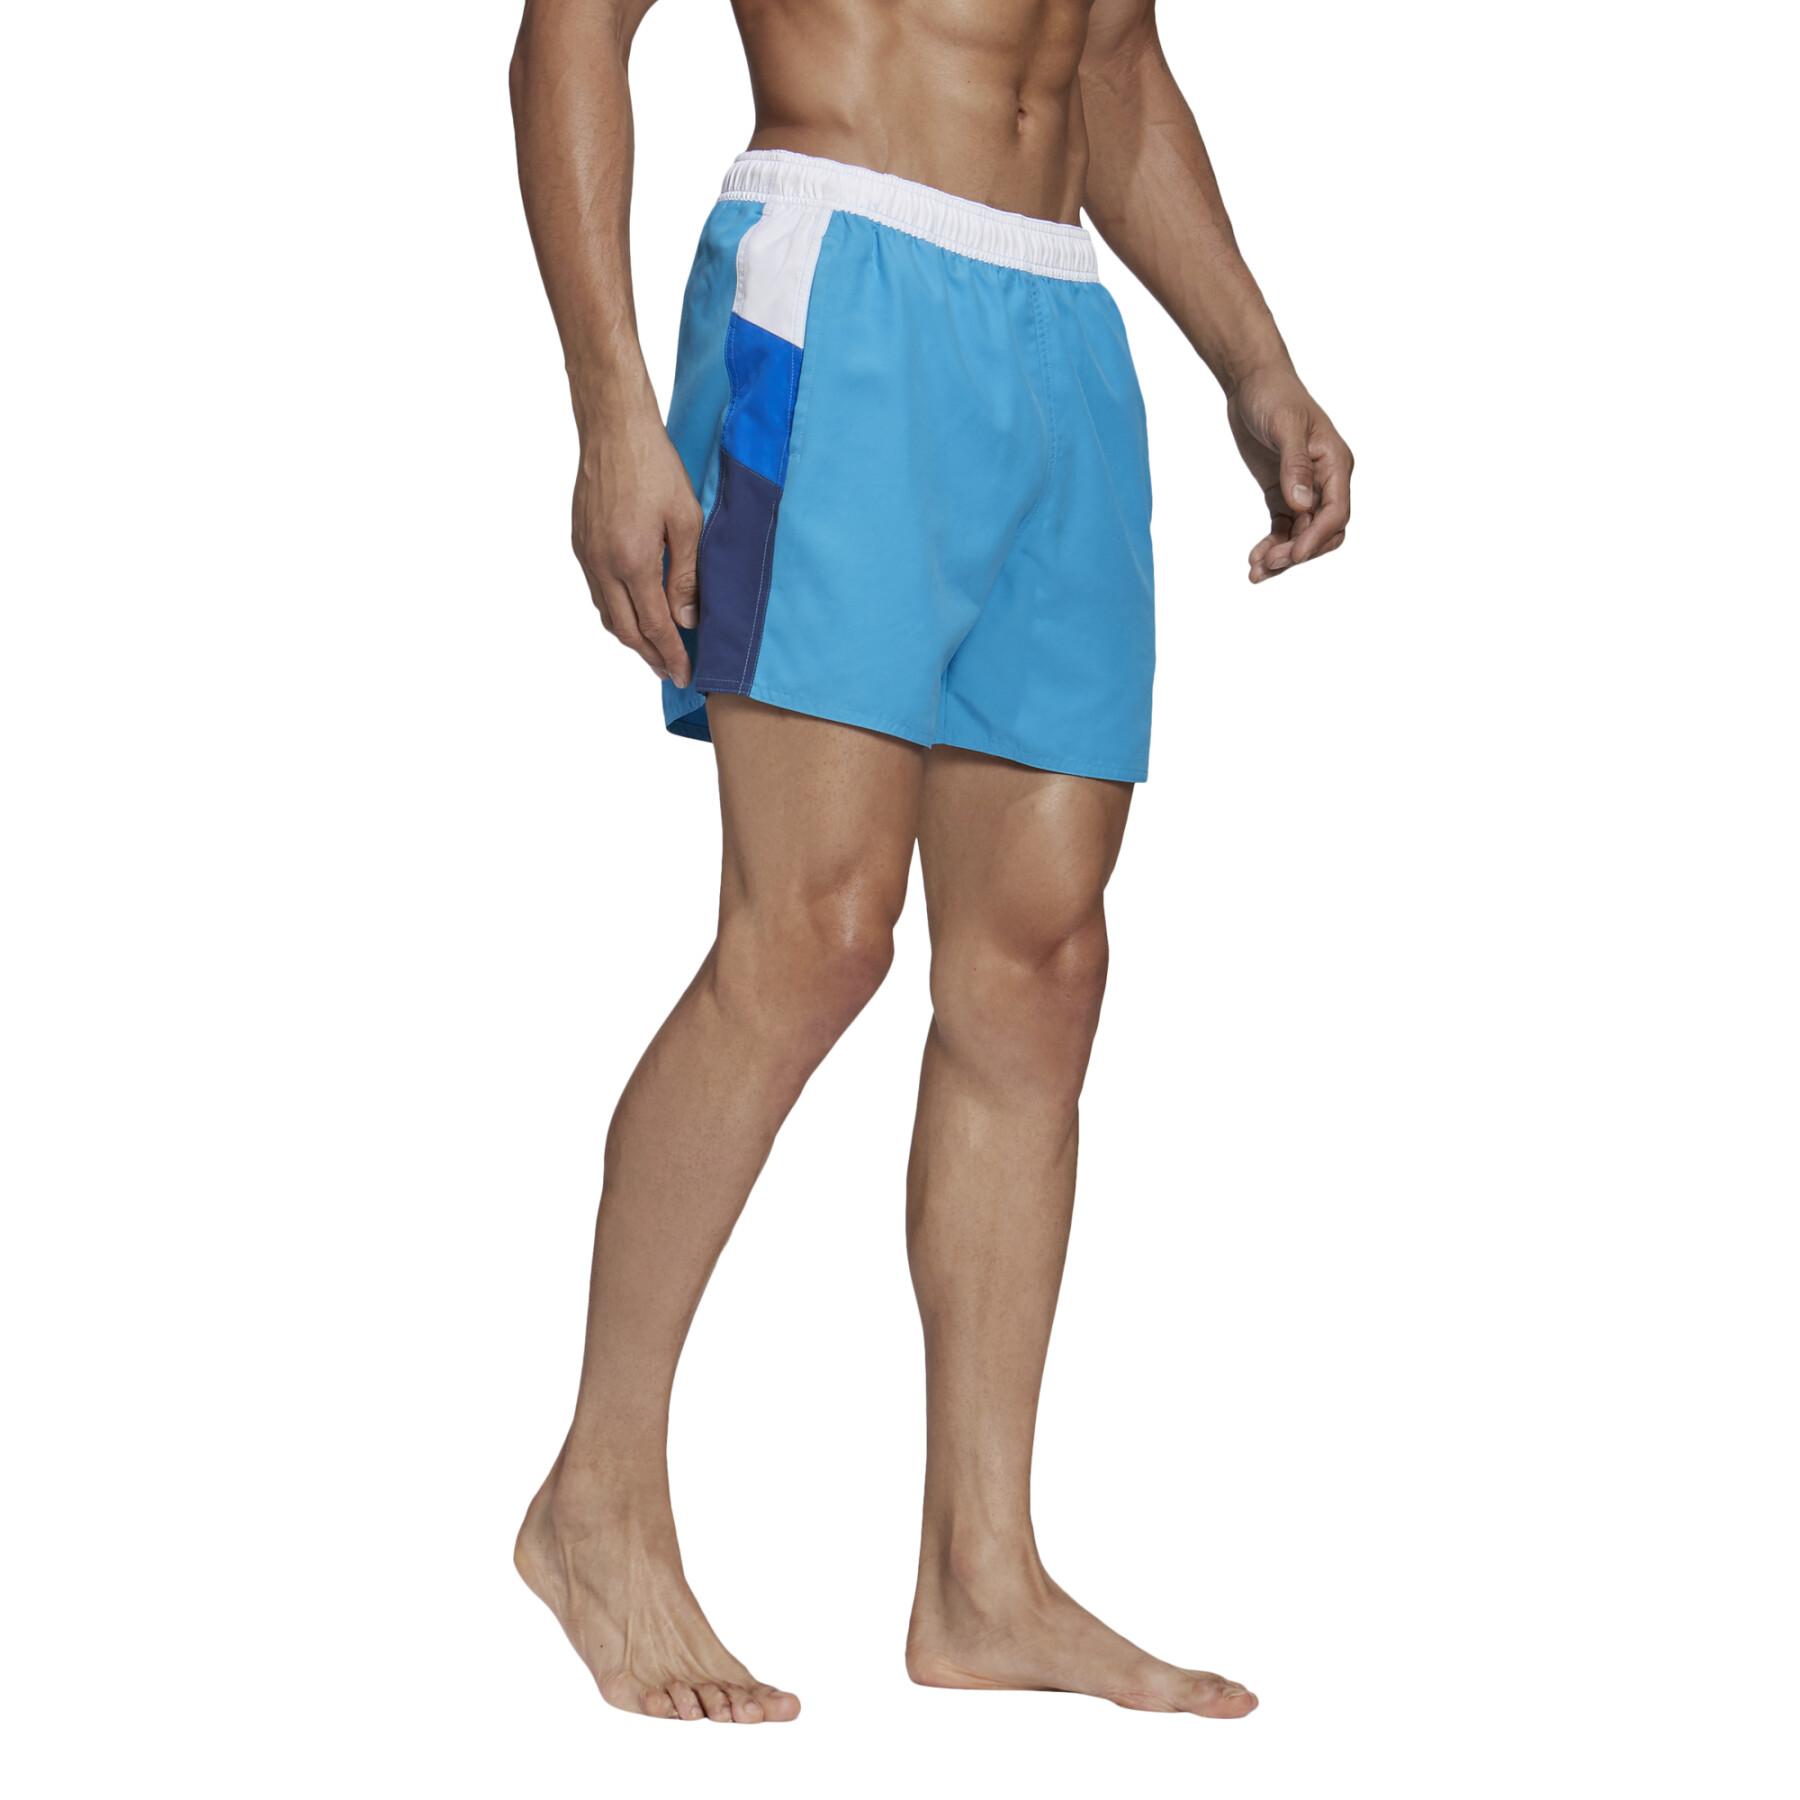 Pantalones cortos de baño adidas Colorblock CLX